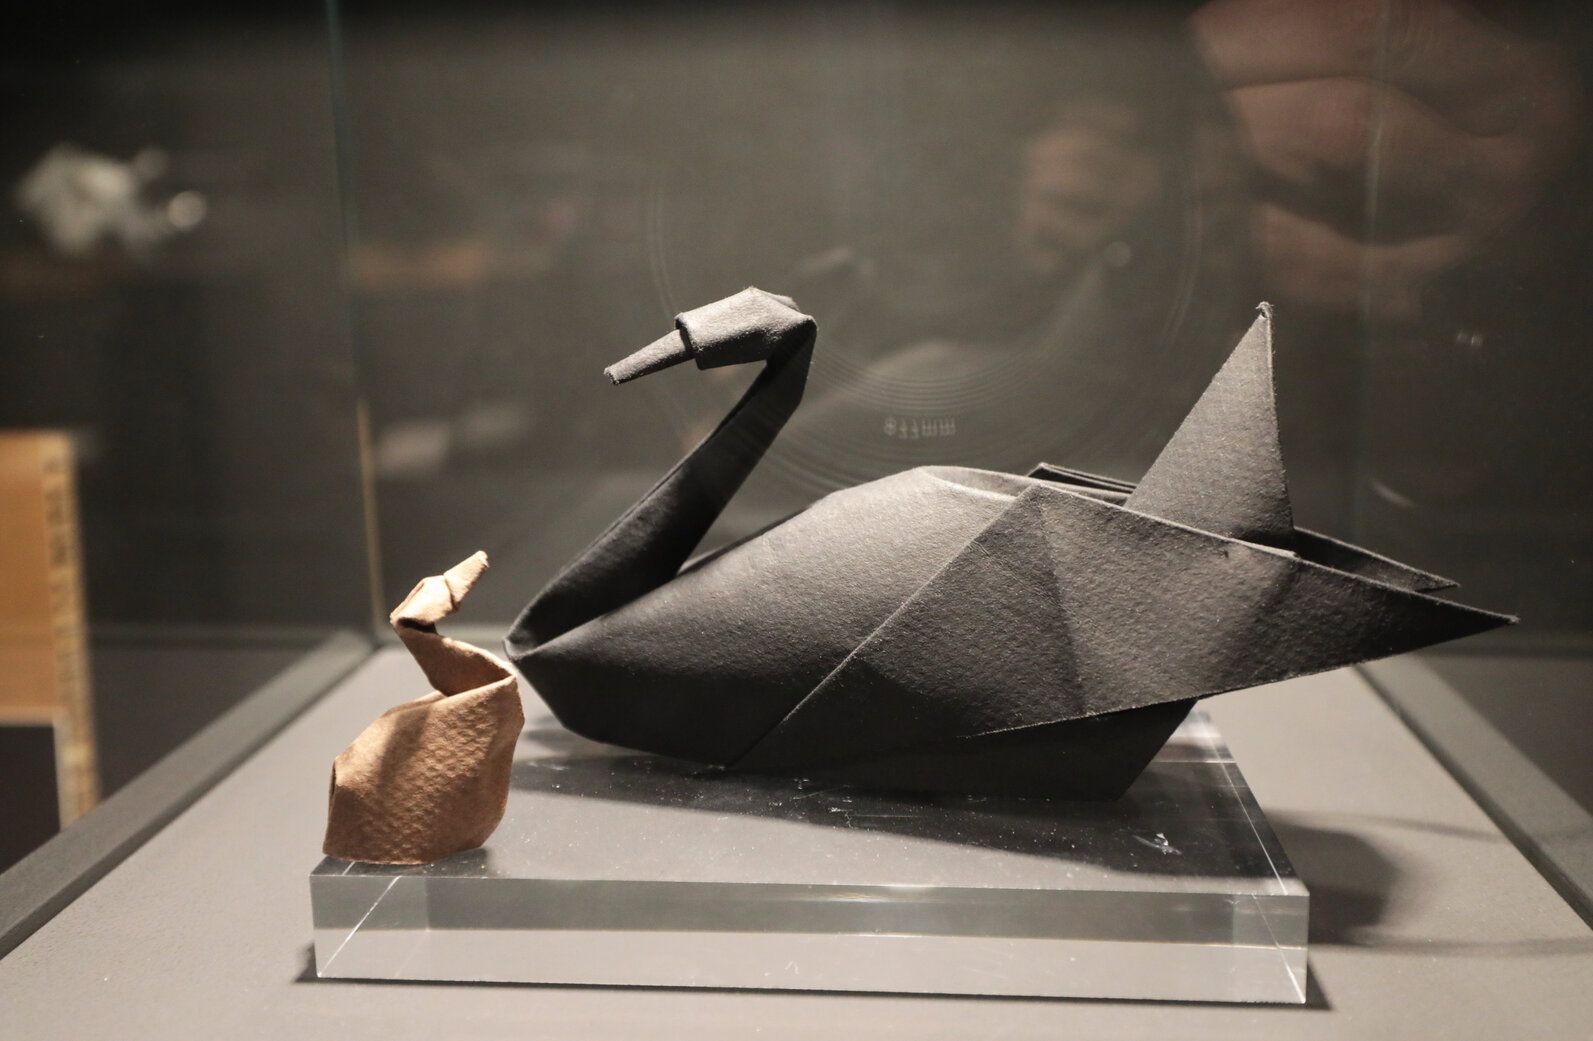 Día de puertas abiertas en el Museo del Origami de Zaragoza